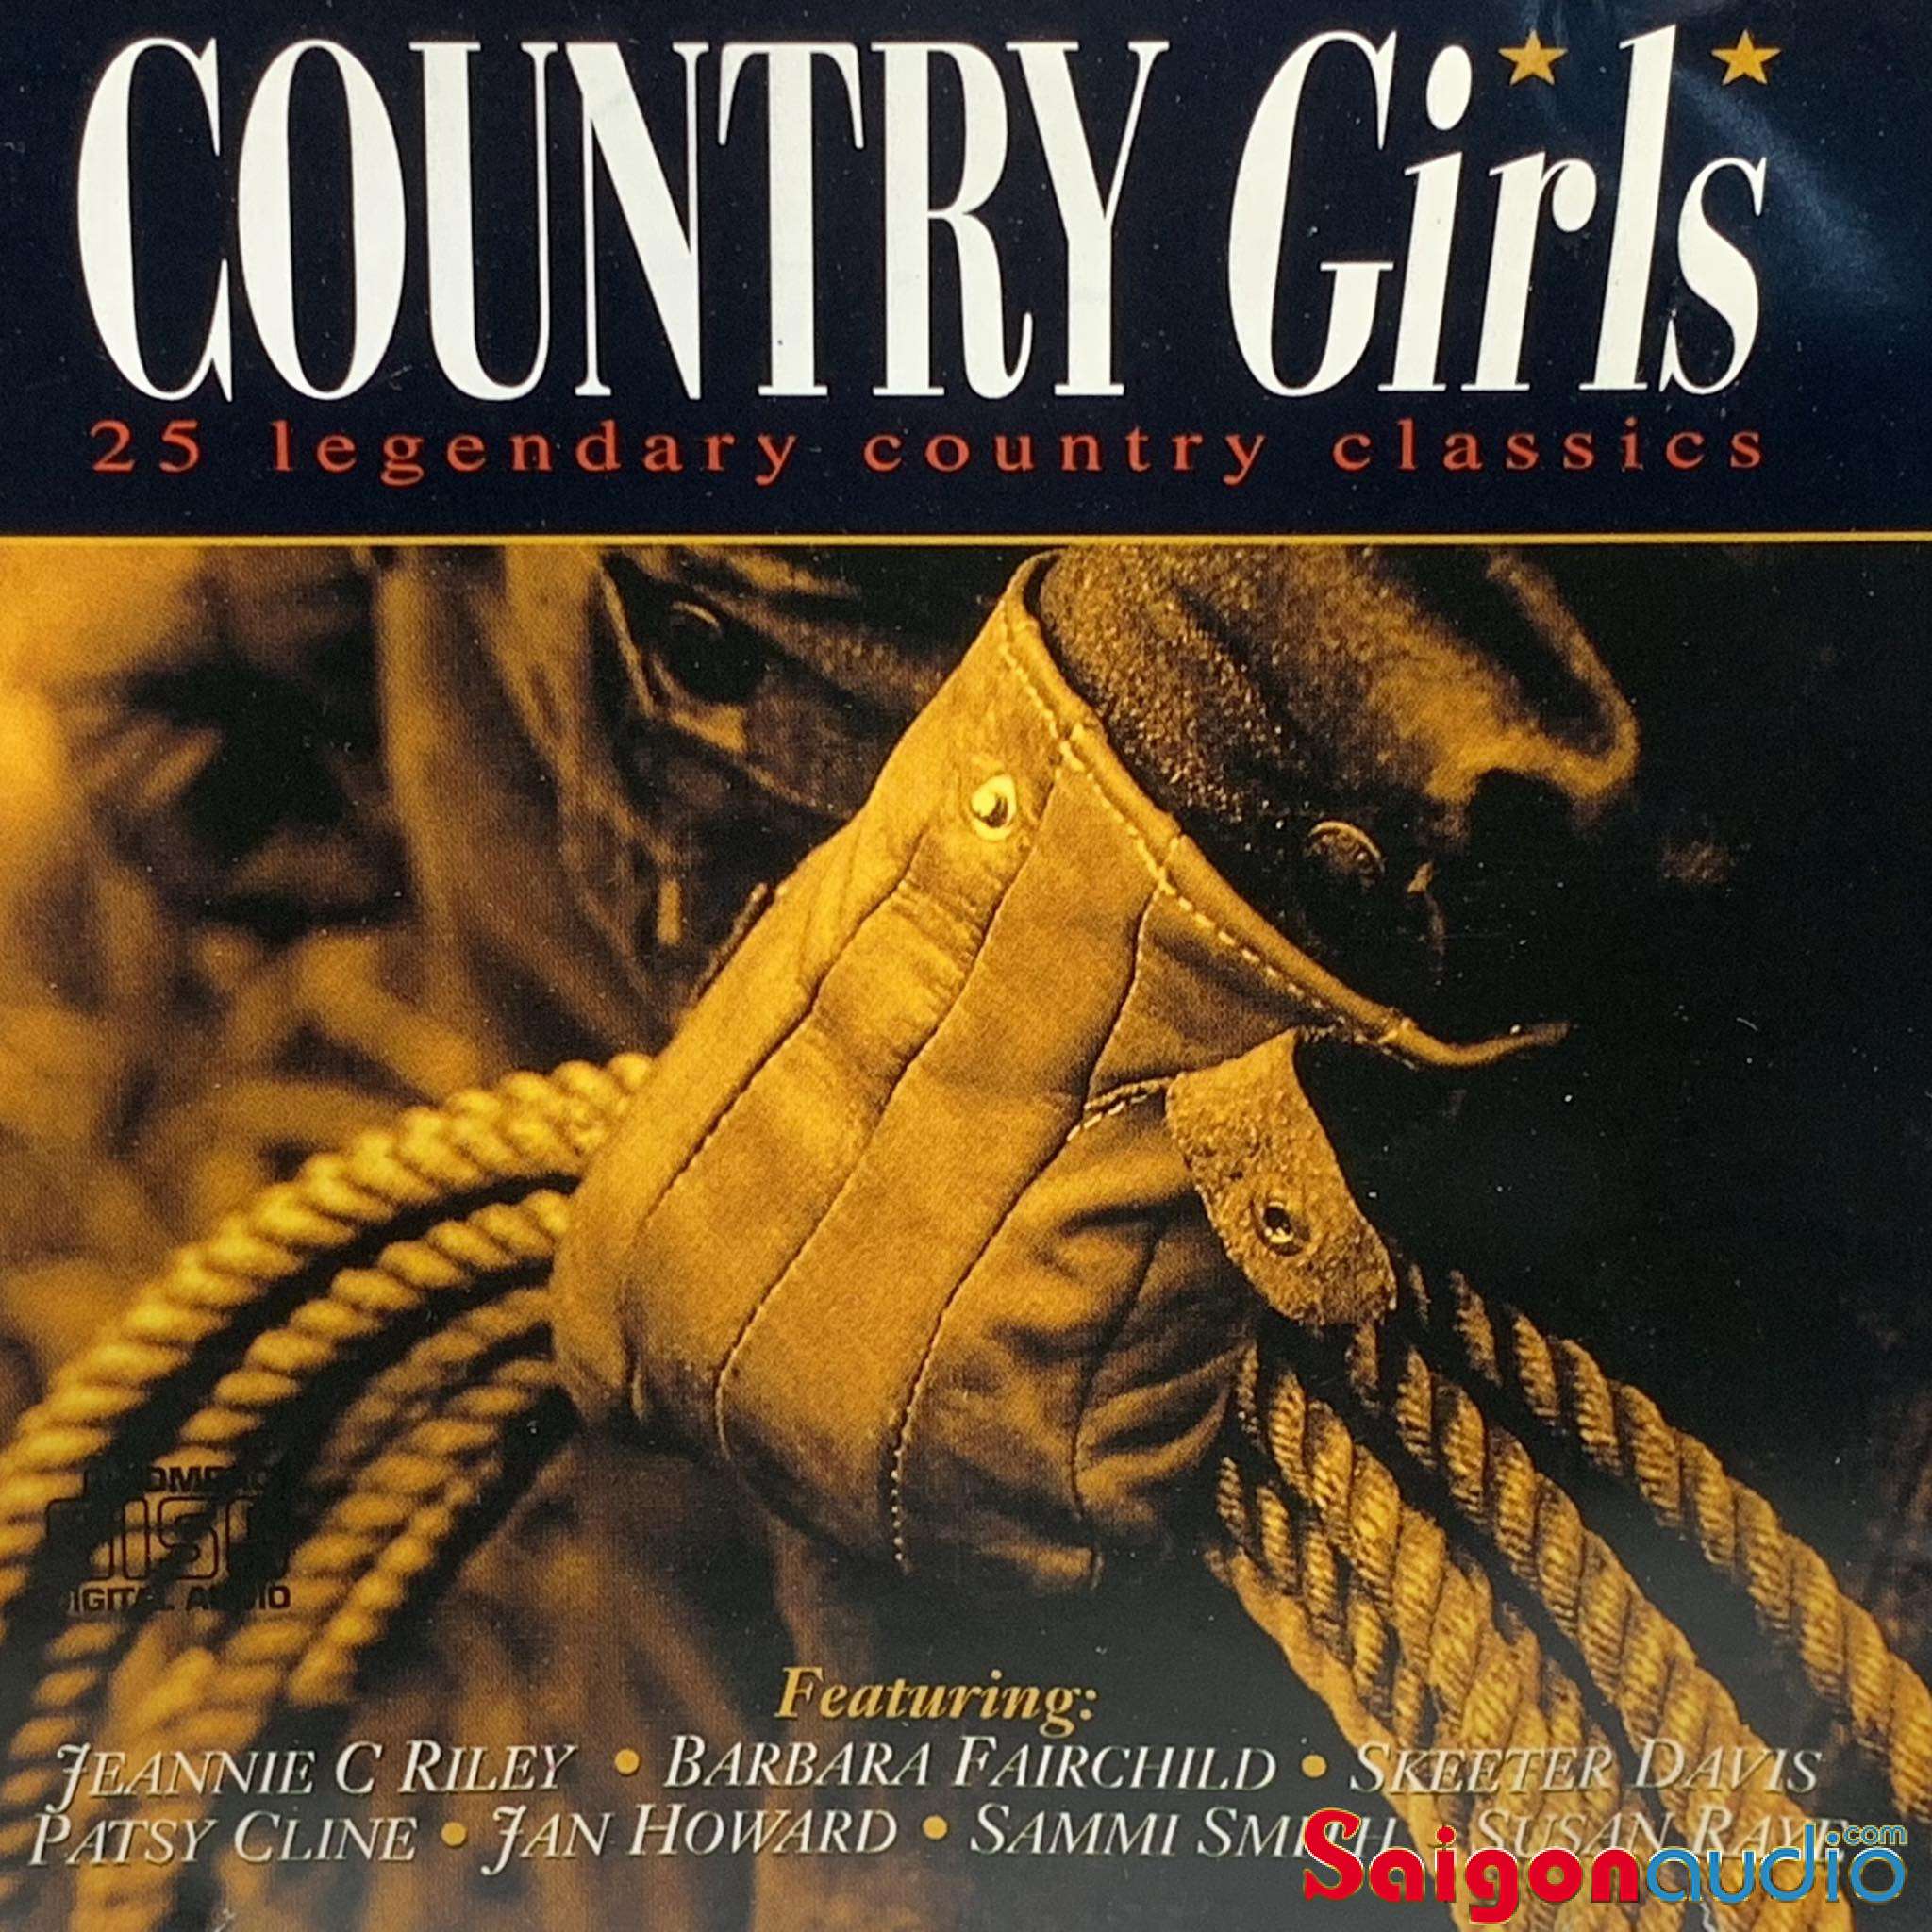 Đĩa CD gốc nhạc country Country Girls - 25 Legendary Country Classics (Free ship khi mua 2 đĩa CD cùng hoặc khác loại)